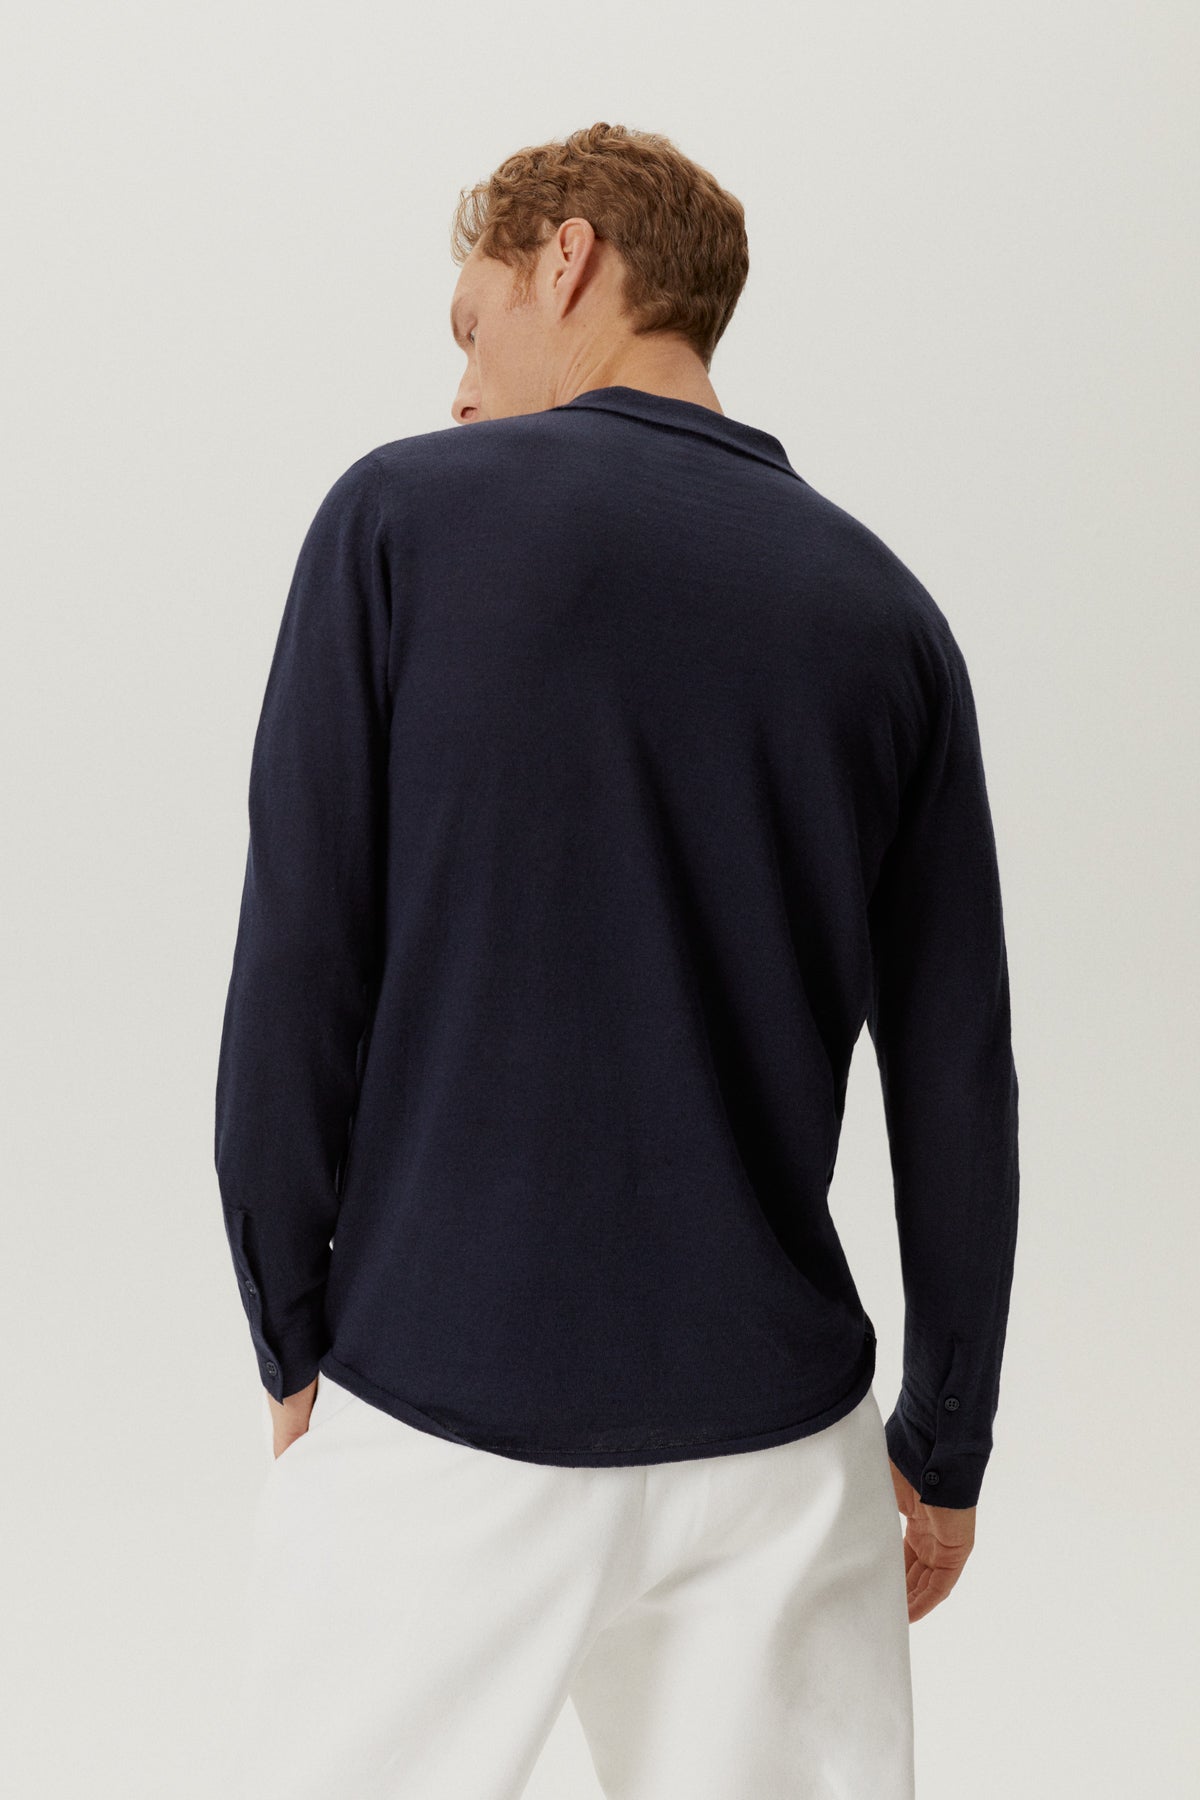 the linen cotton knit shirt blue navy